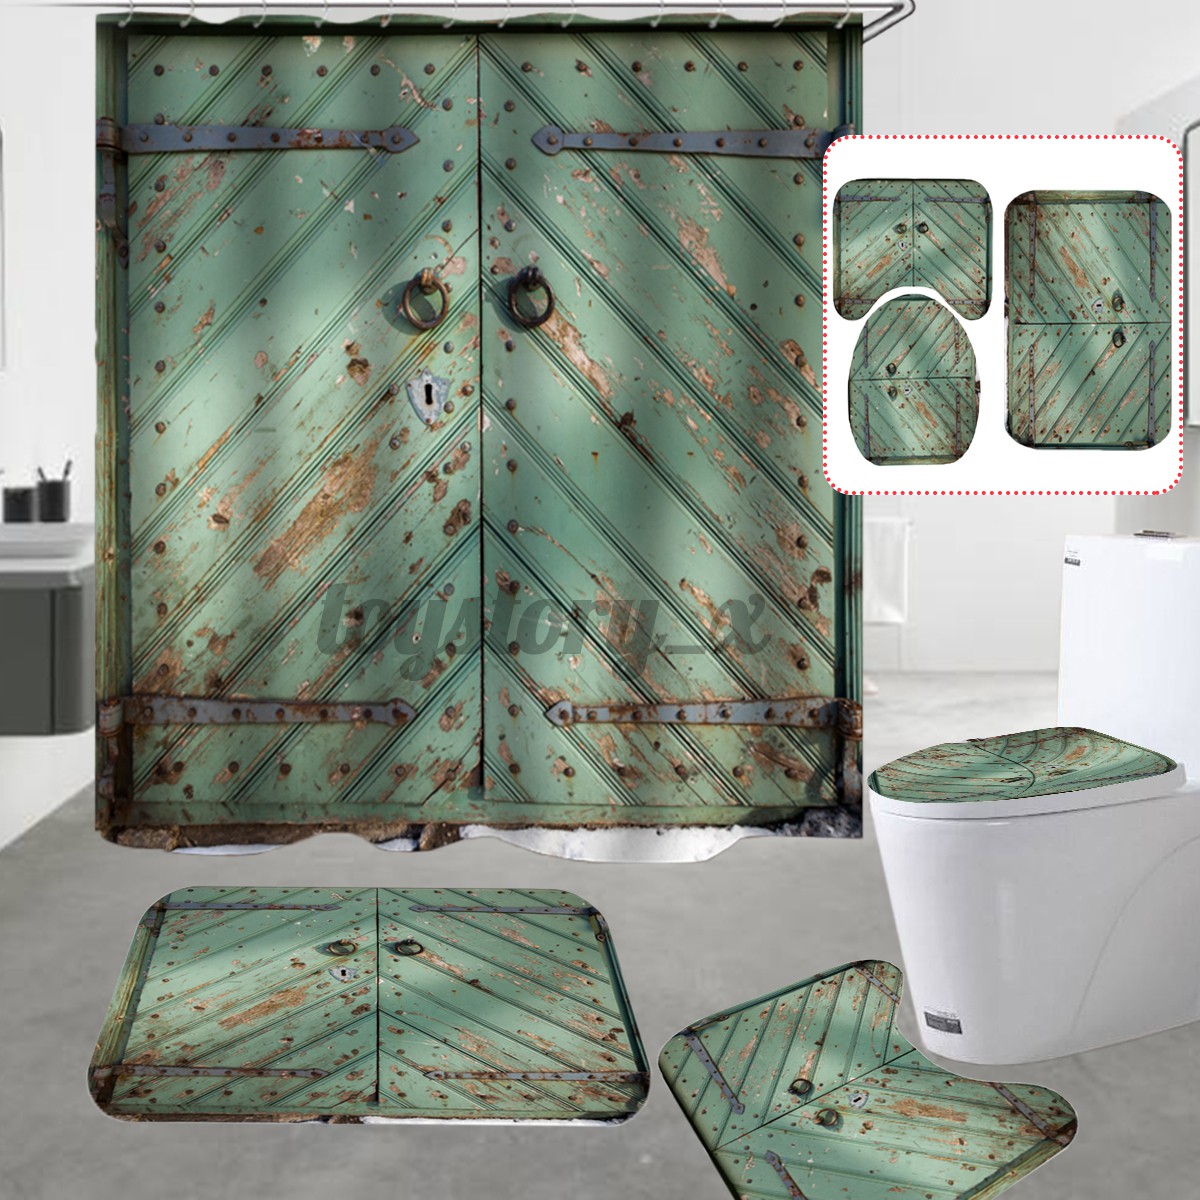 Set nắp bồn vệ sinh / rèm cửa/ thảm trải sàn chống trượt làm xanh lá cổ điển dùng cho nhà tắm tiện dụng